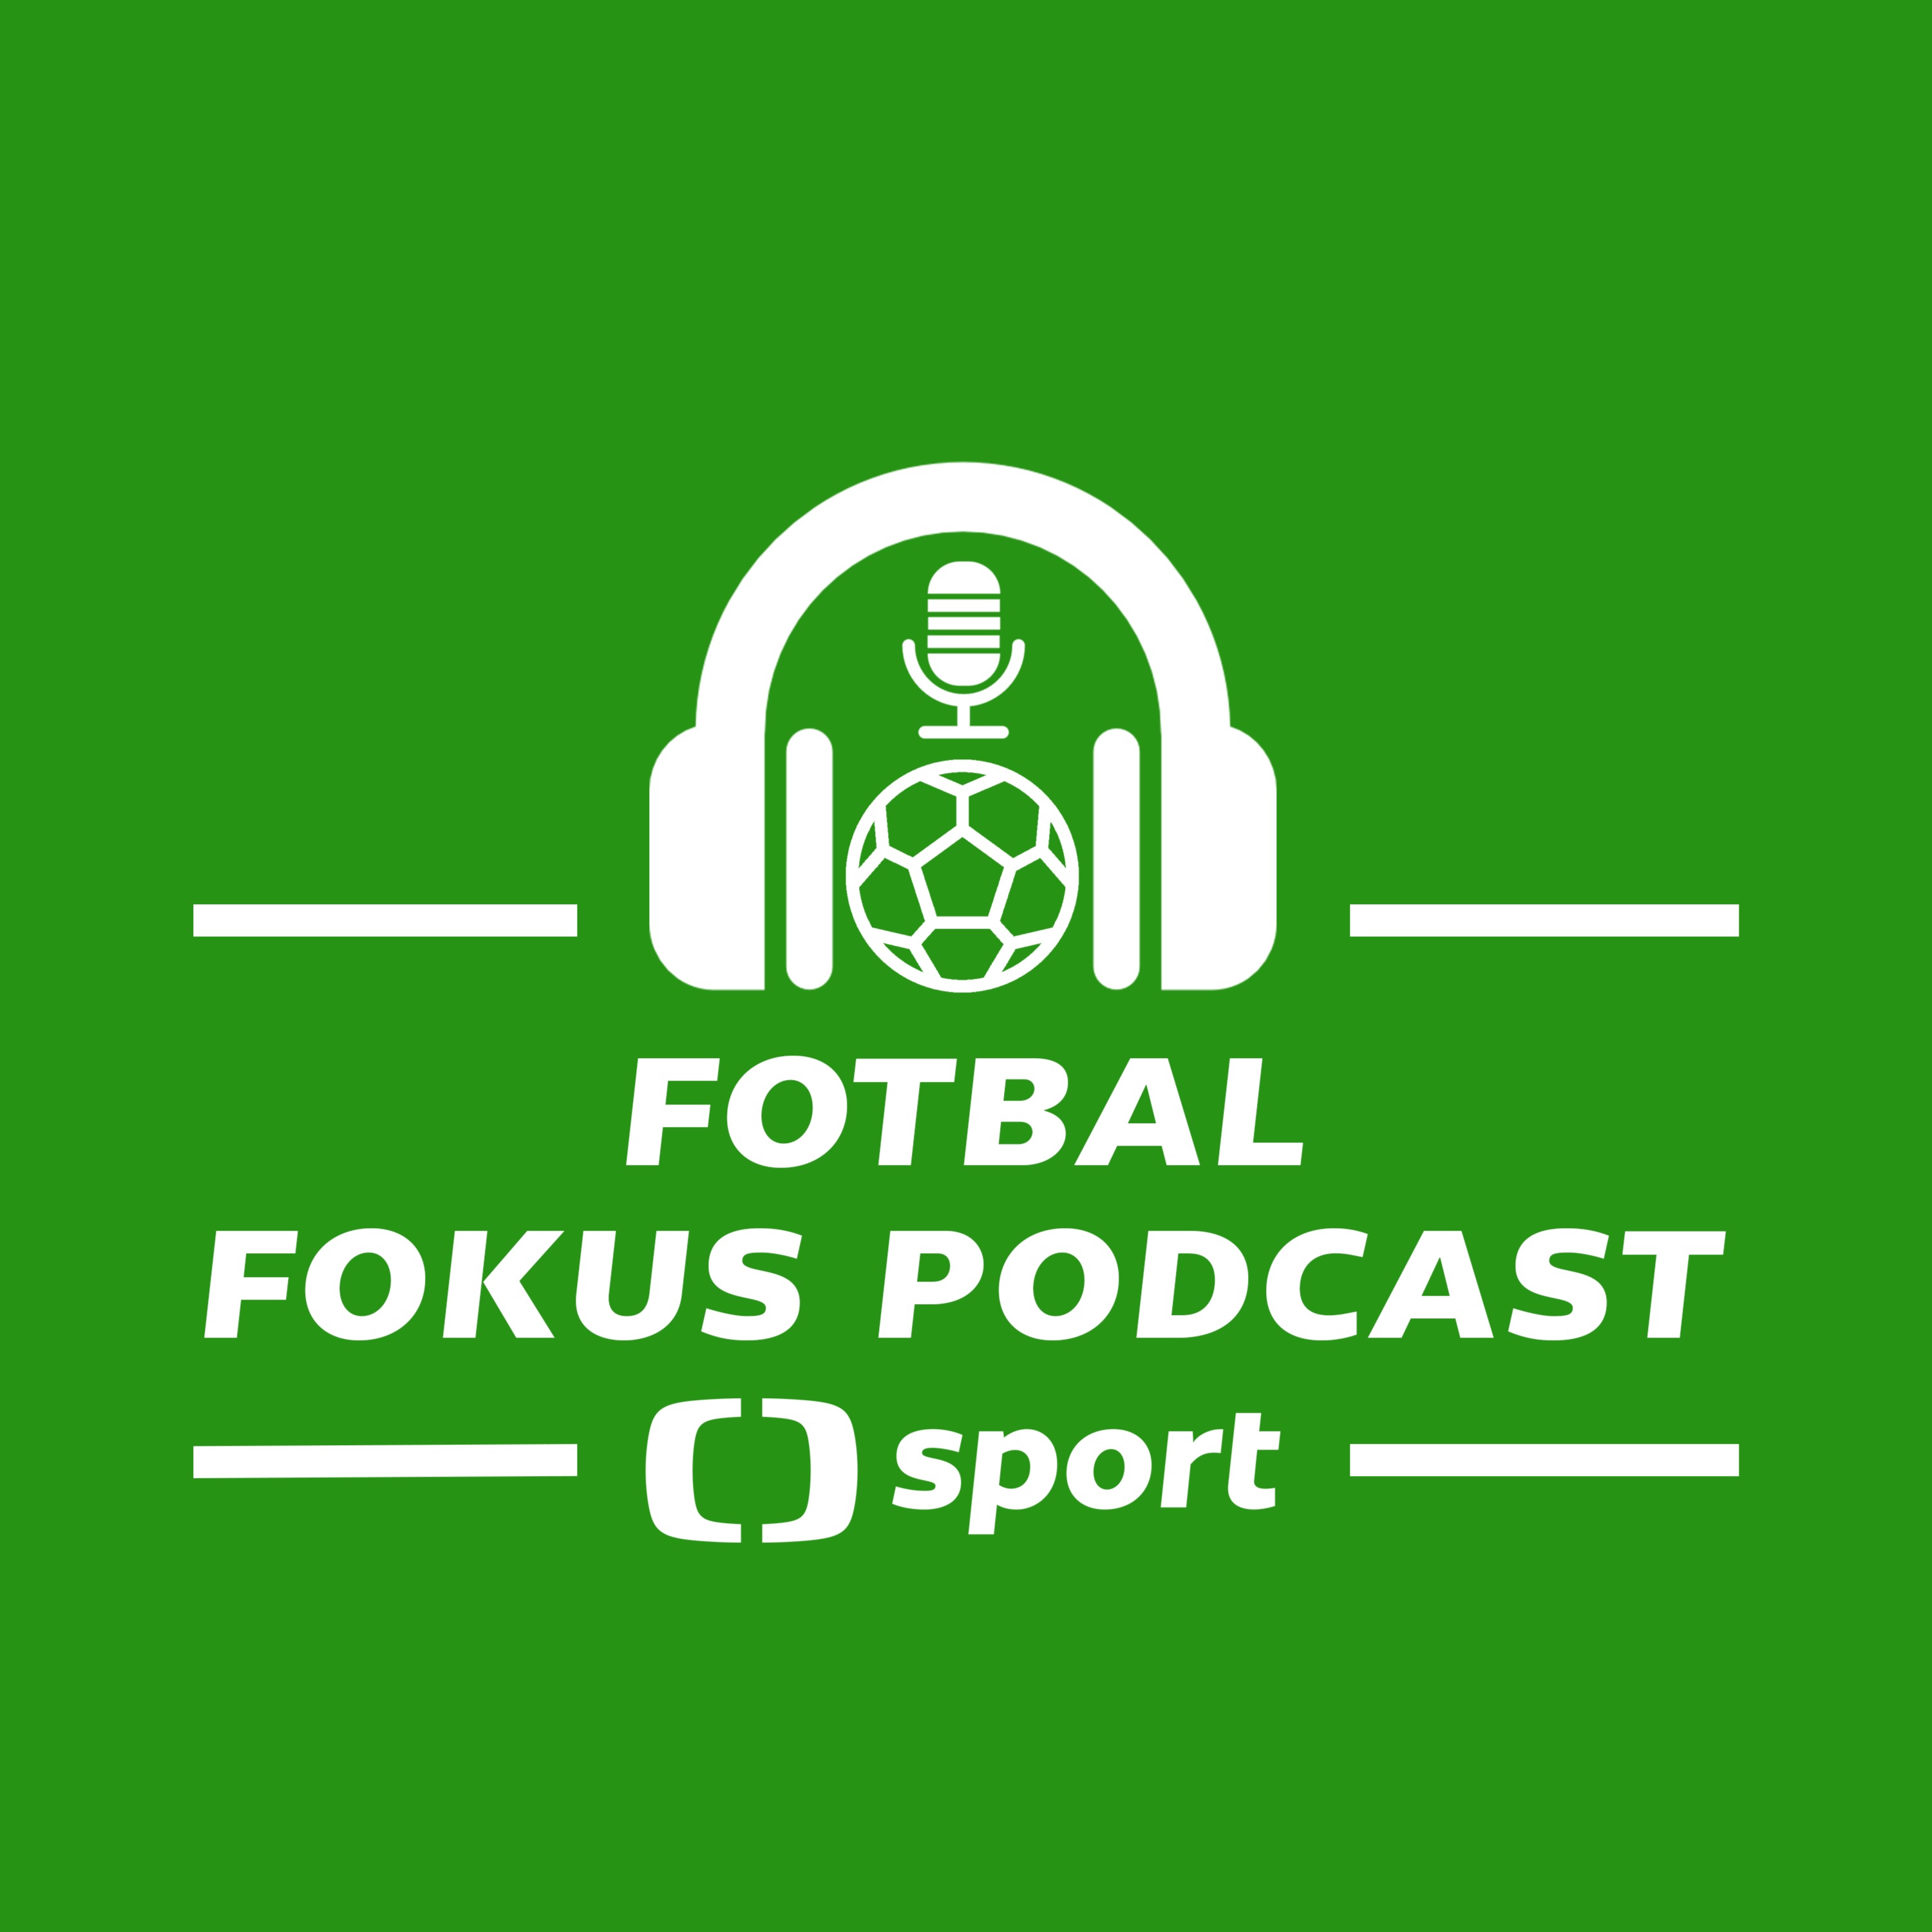 Fotbal fokus podcast: Slavia bez šťávy, zaseklý Karabec a Coufalova otevřenost